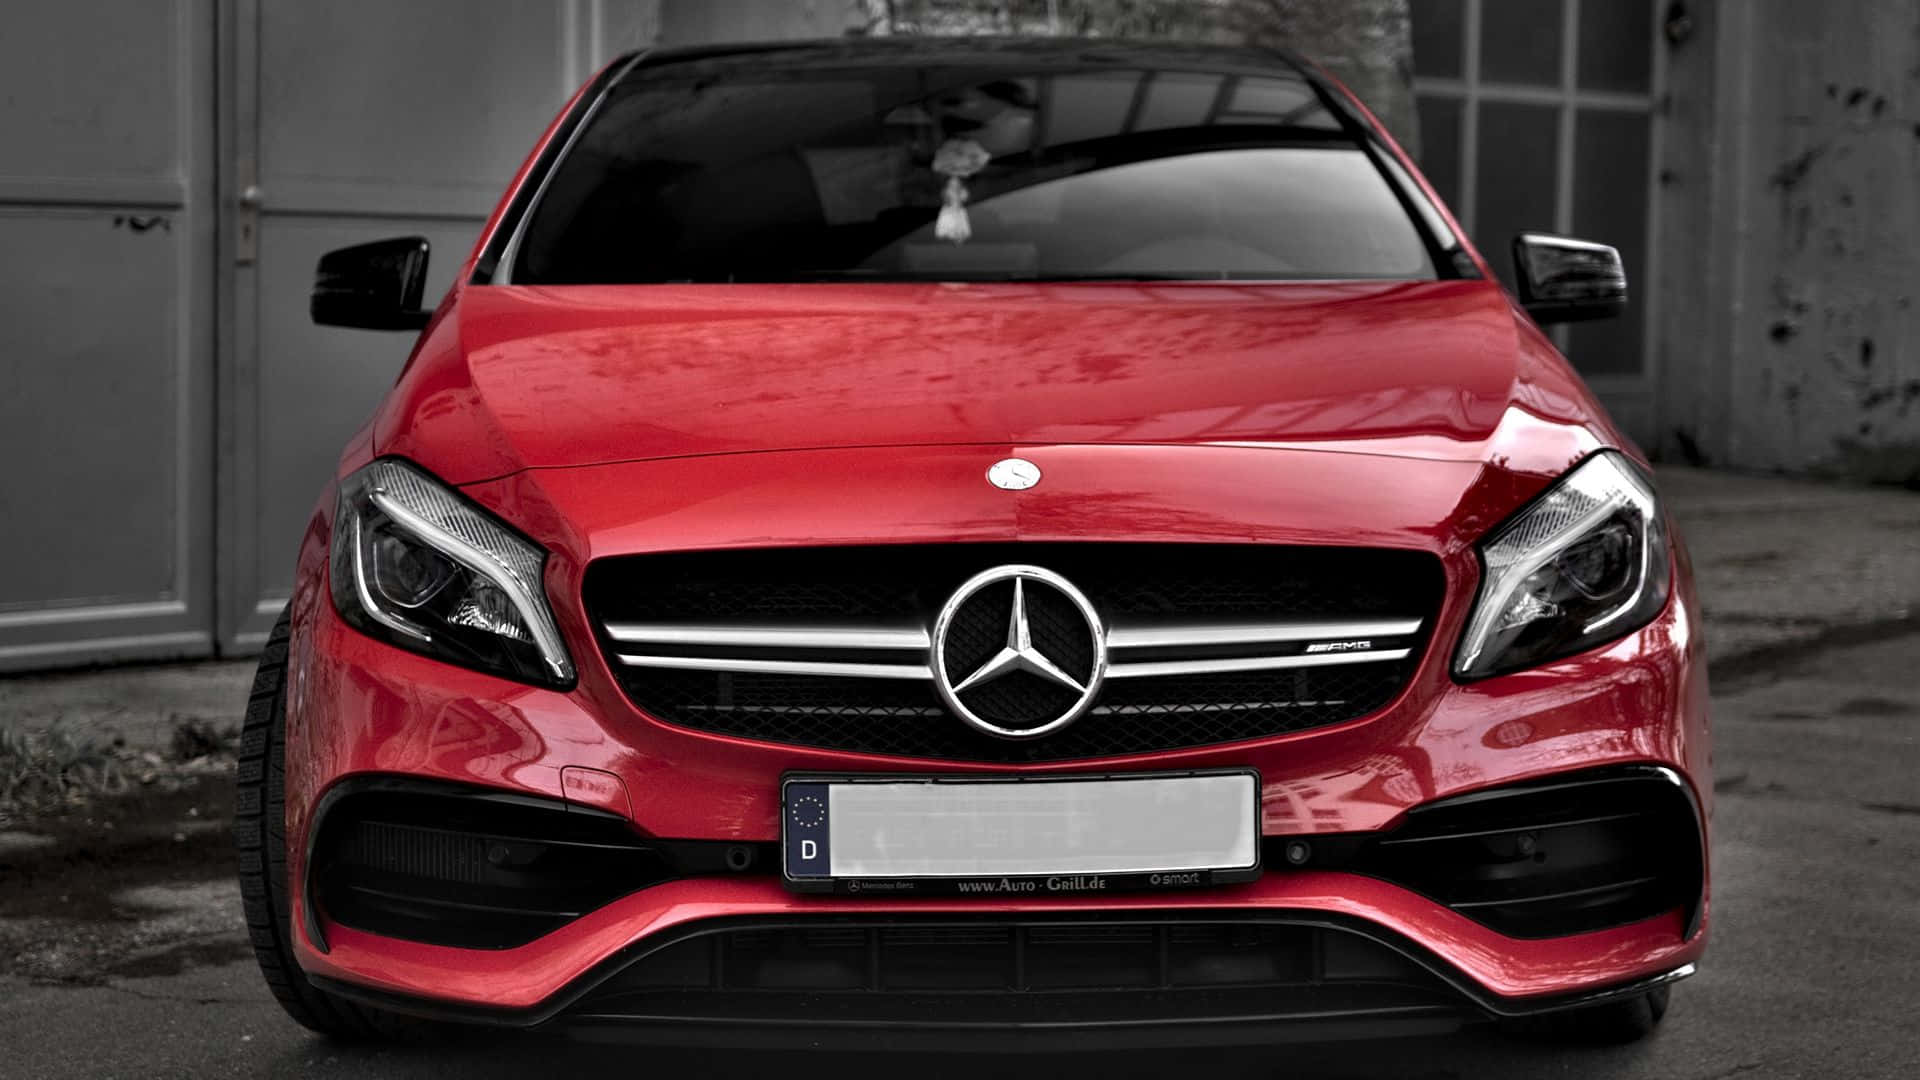 Fondode Pantalla Genial De Un Mercedes Benz Rojo En Alta Definición. Fondo de pantalla